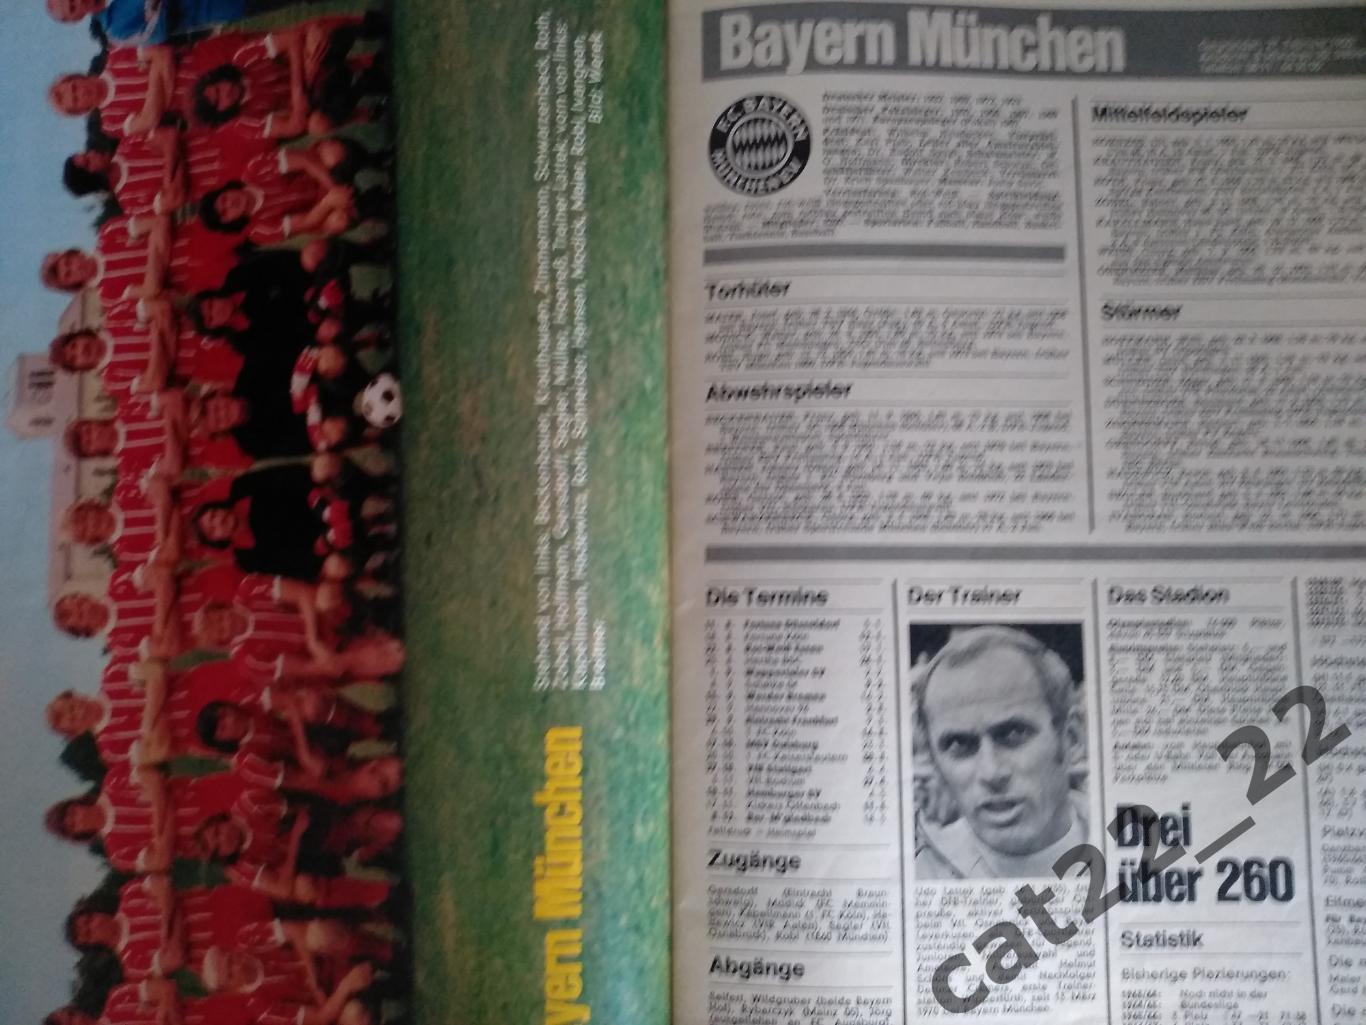 Журнал Кикер/Kicker. Полный номер. Все постеры. Германия. Сезон 1973/1974 2